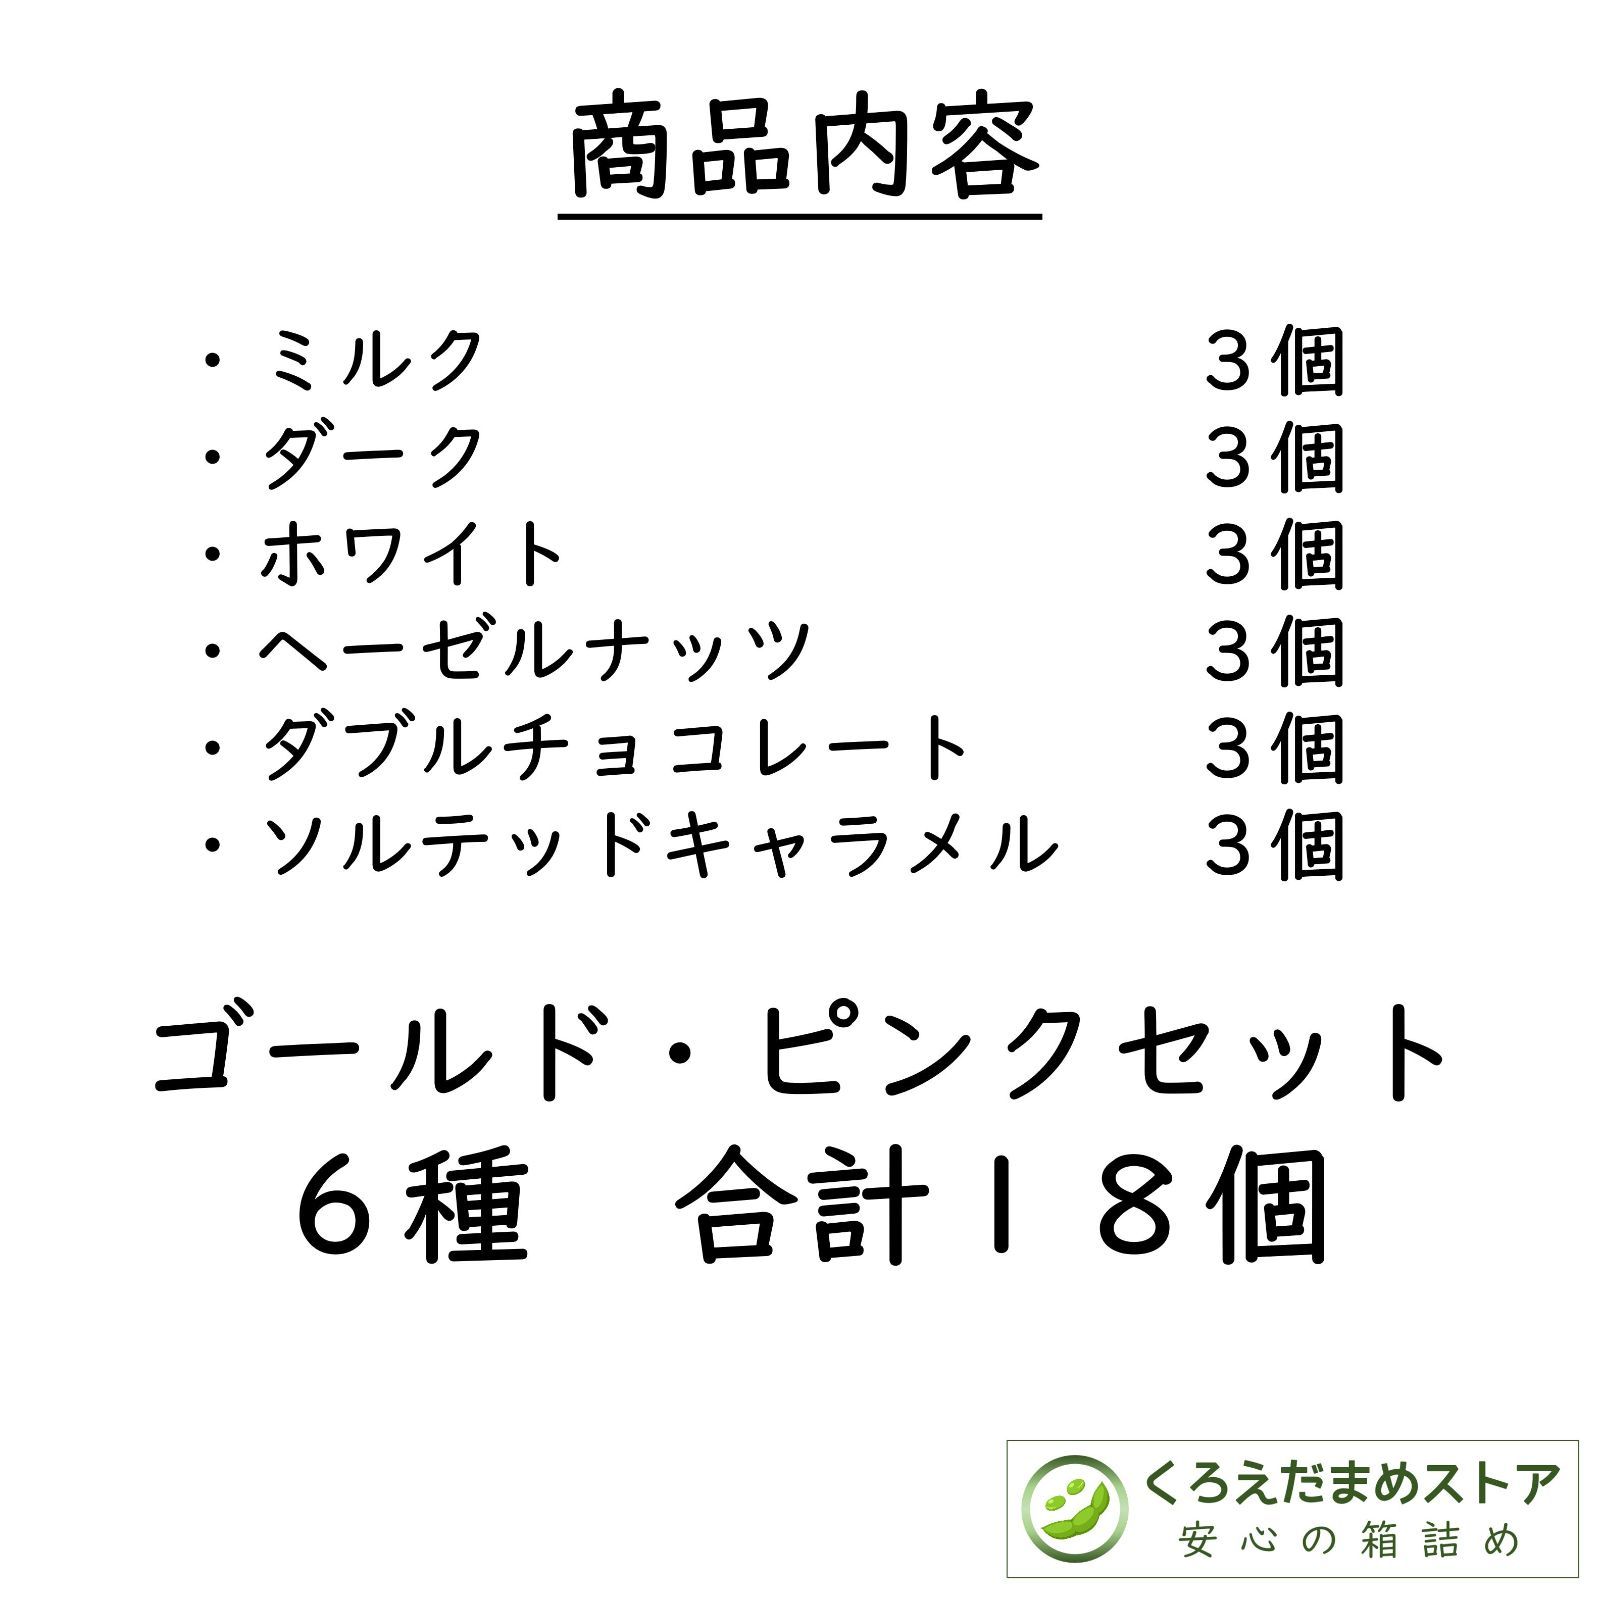 【箱詰・スピード発送】KP18 ゴールドピンクセット 6種18個 リンドール-2